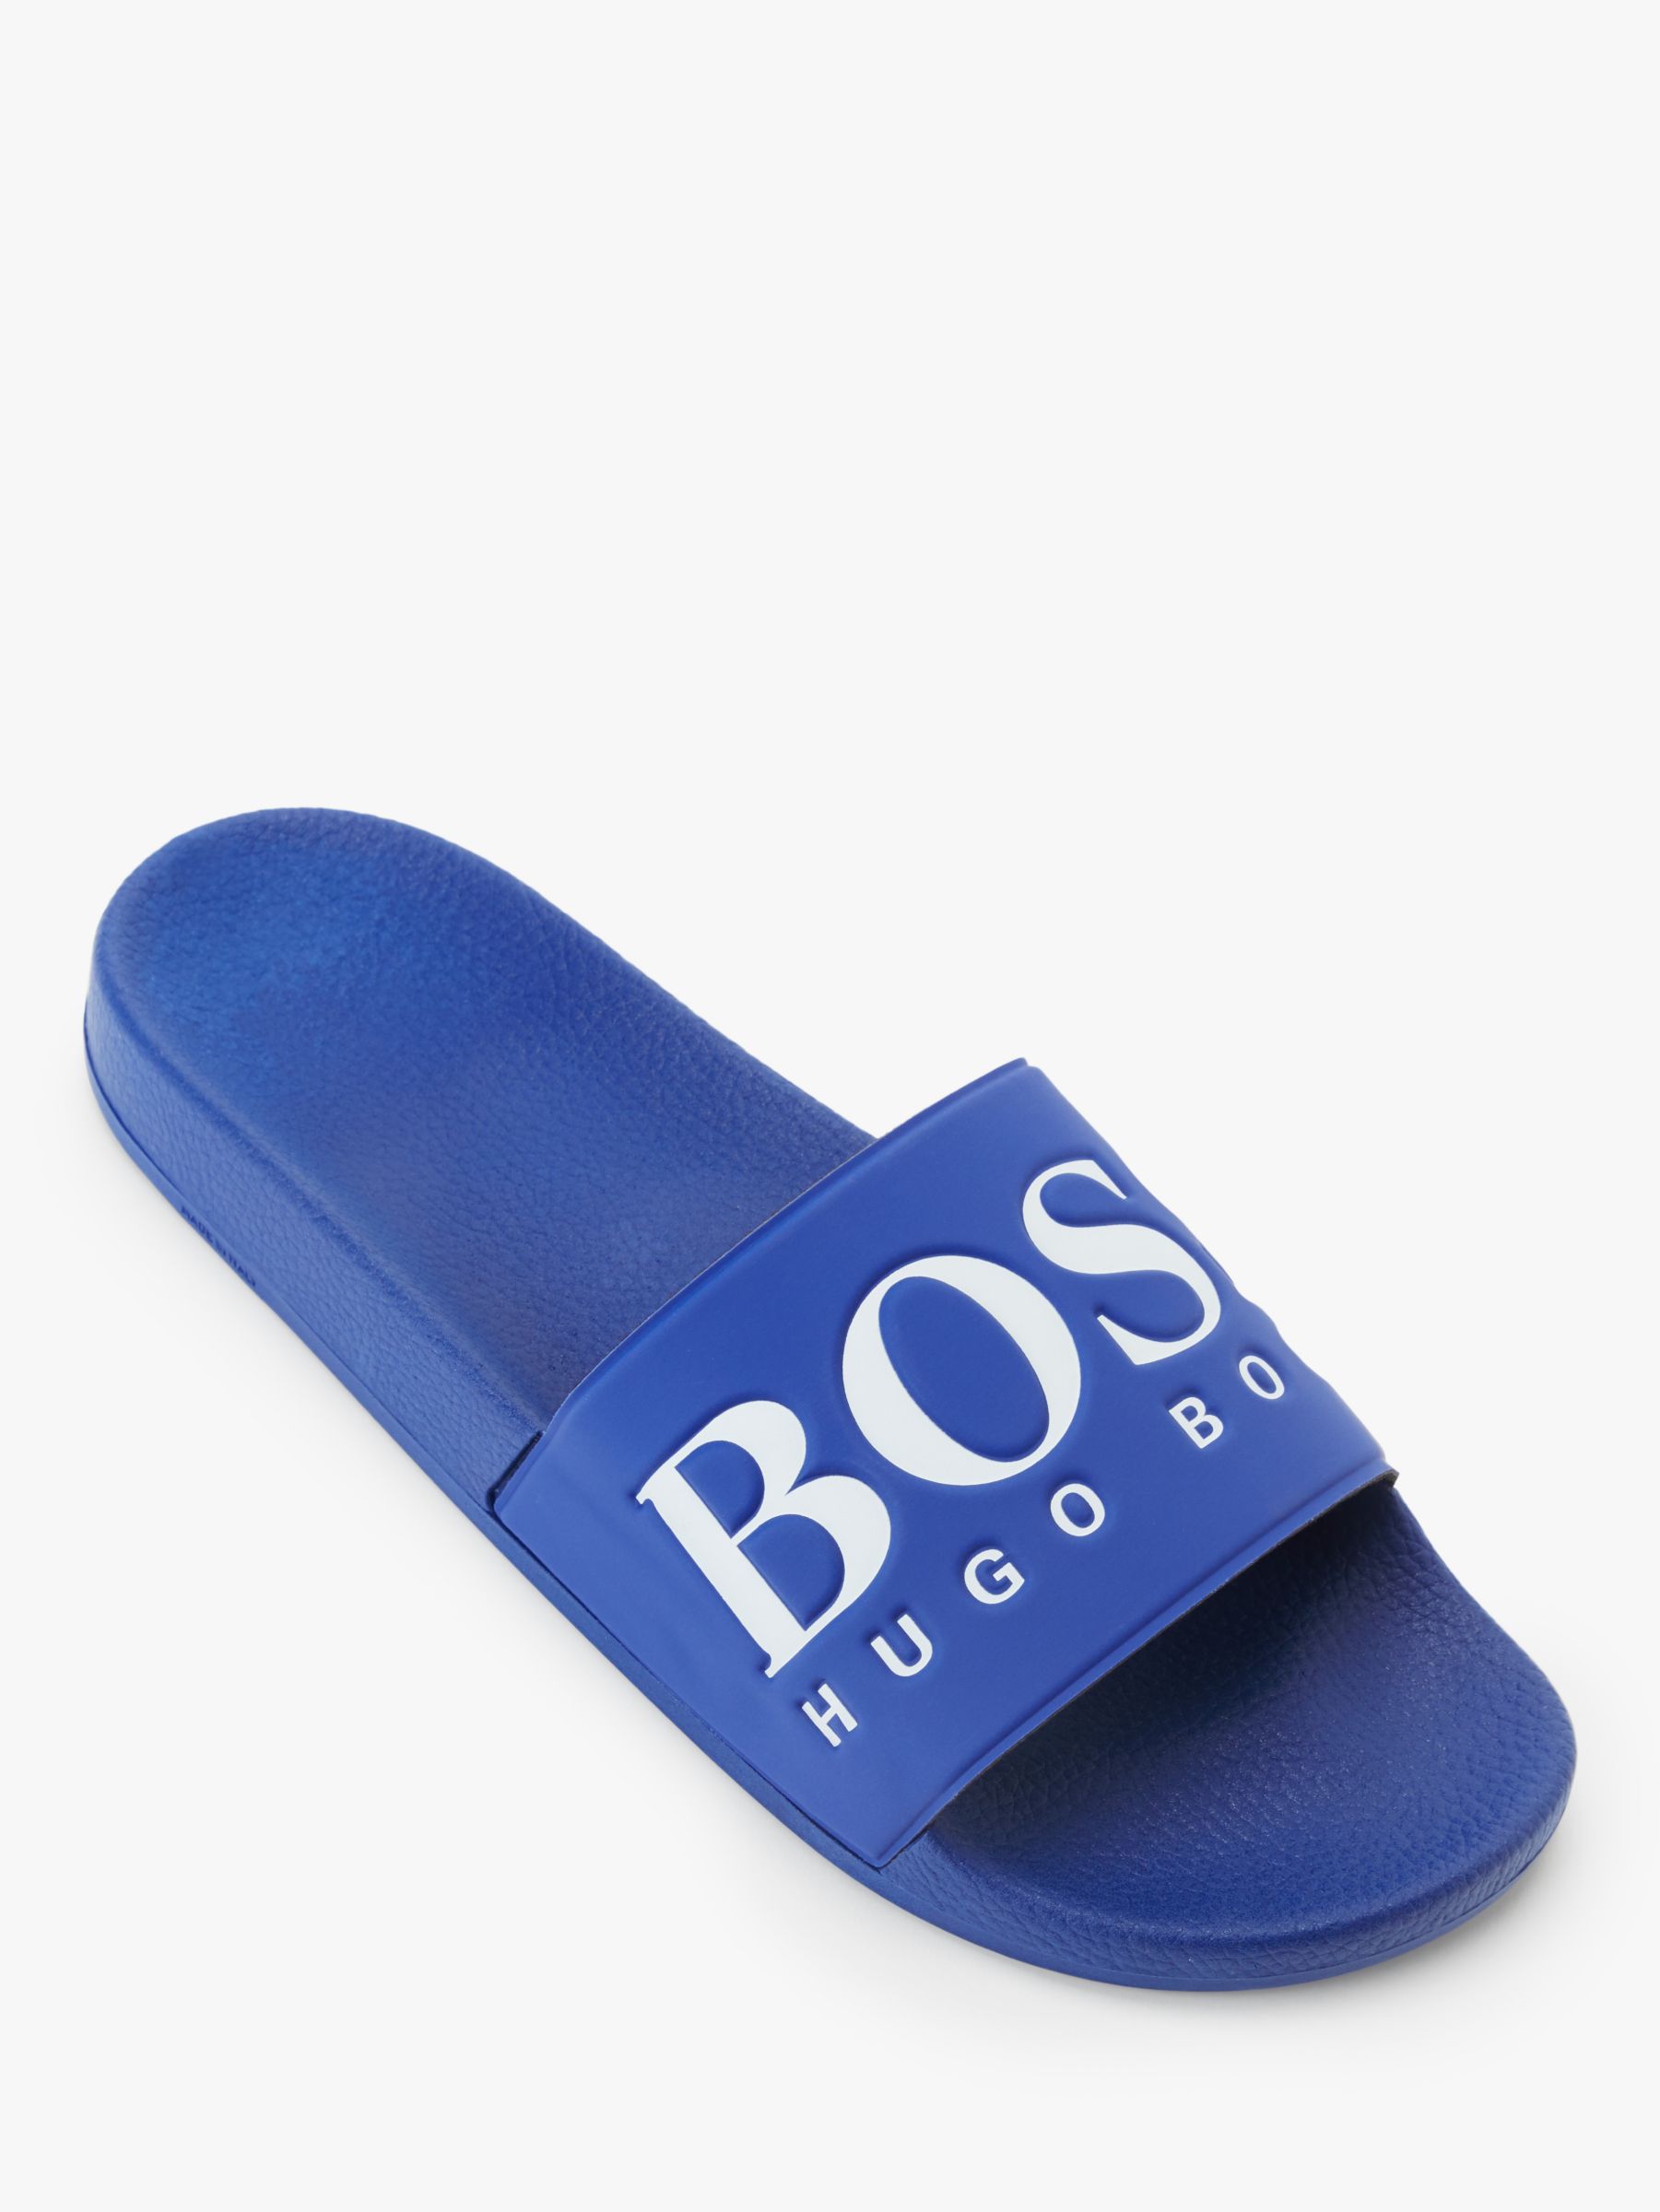 hugo boss blue sliders